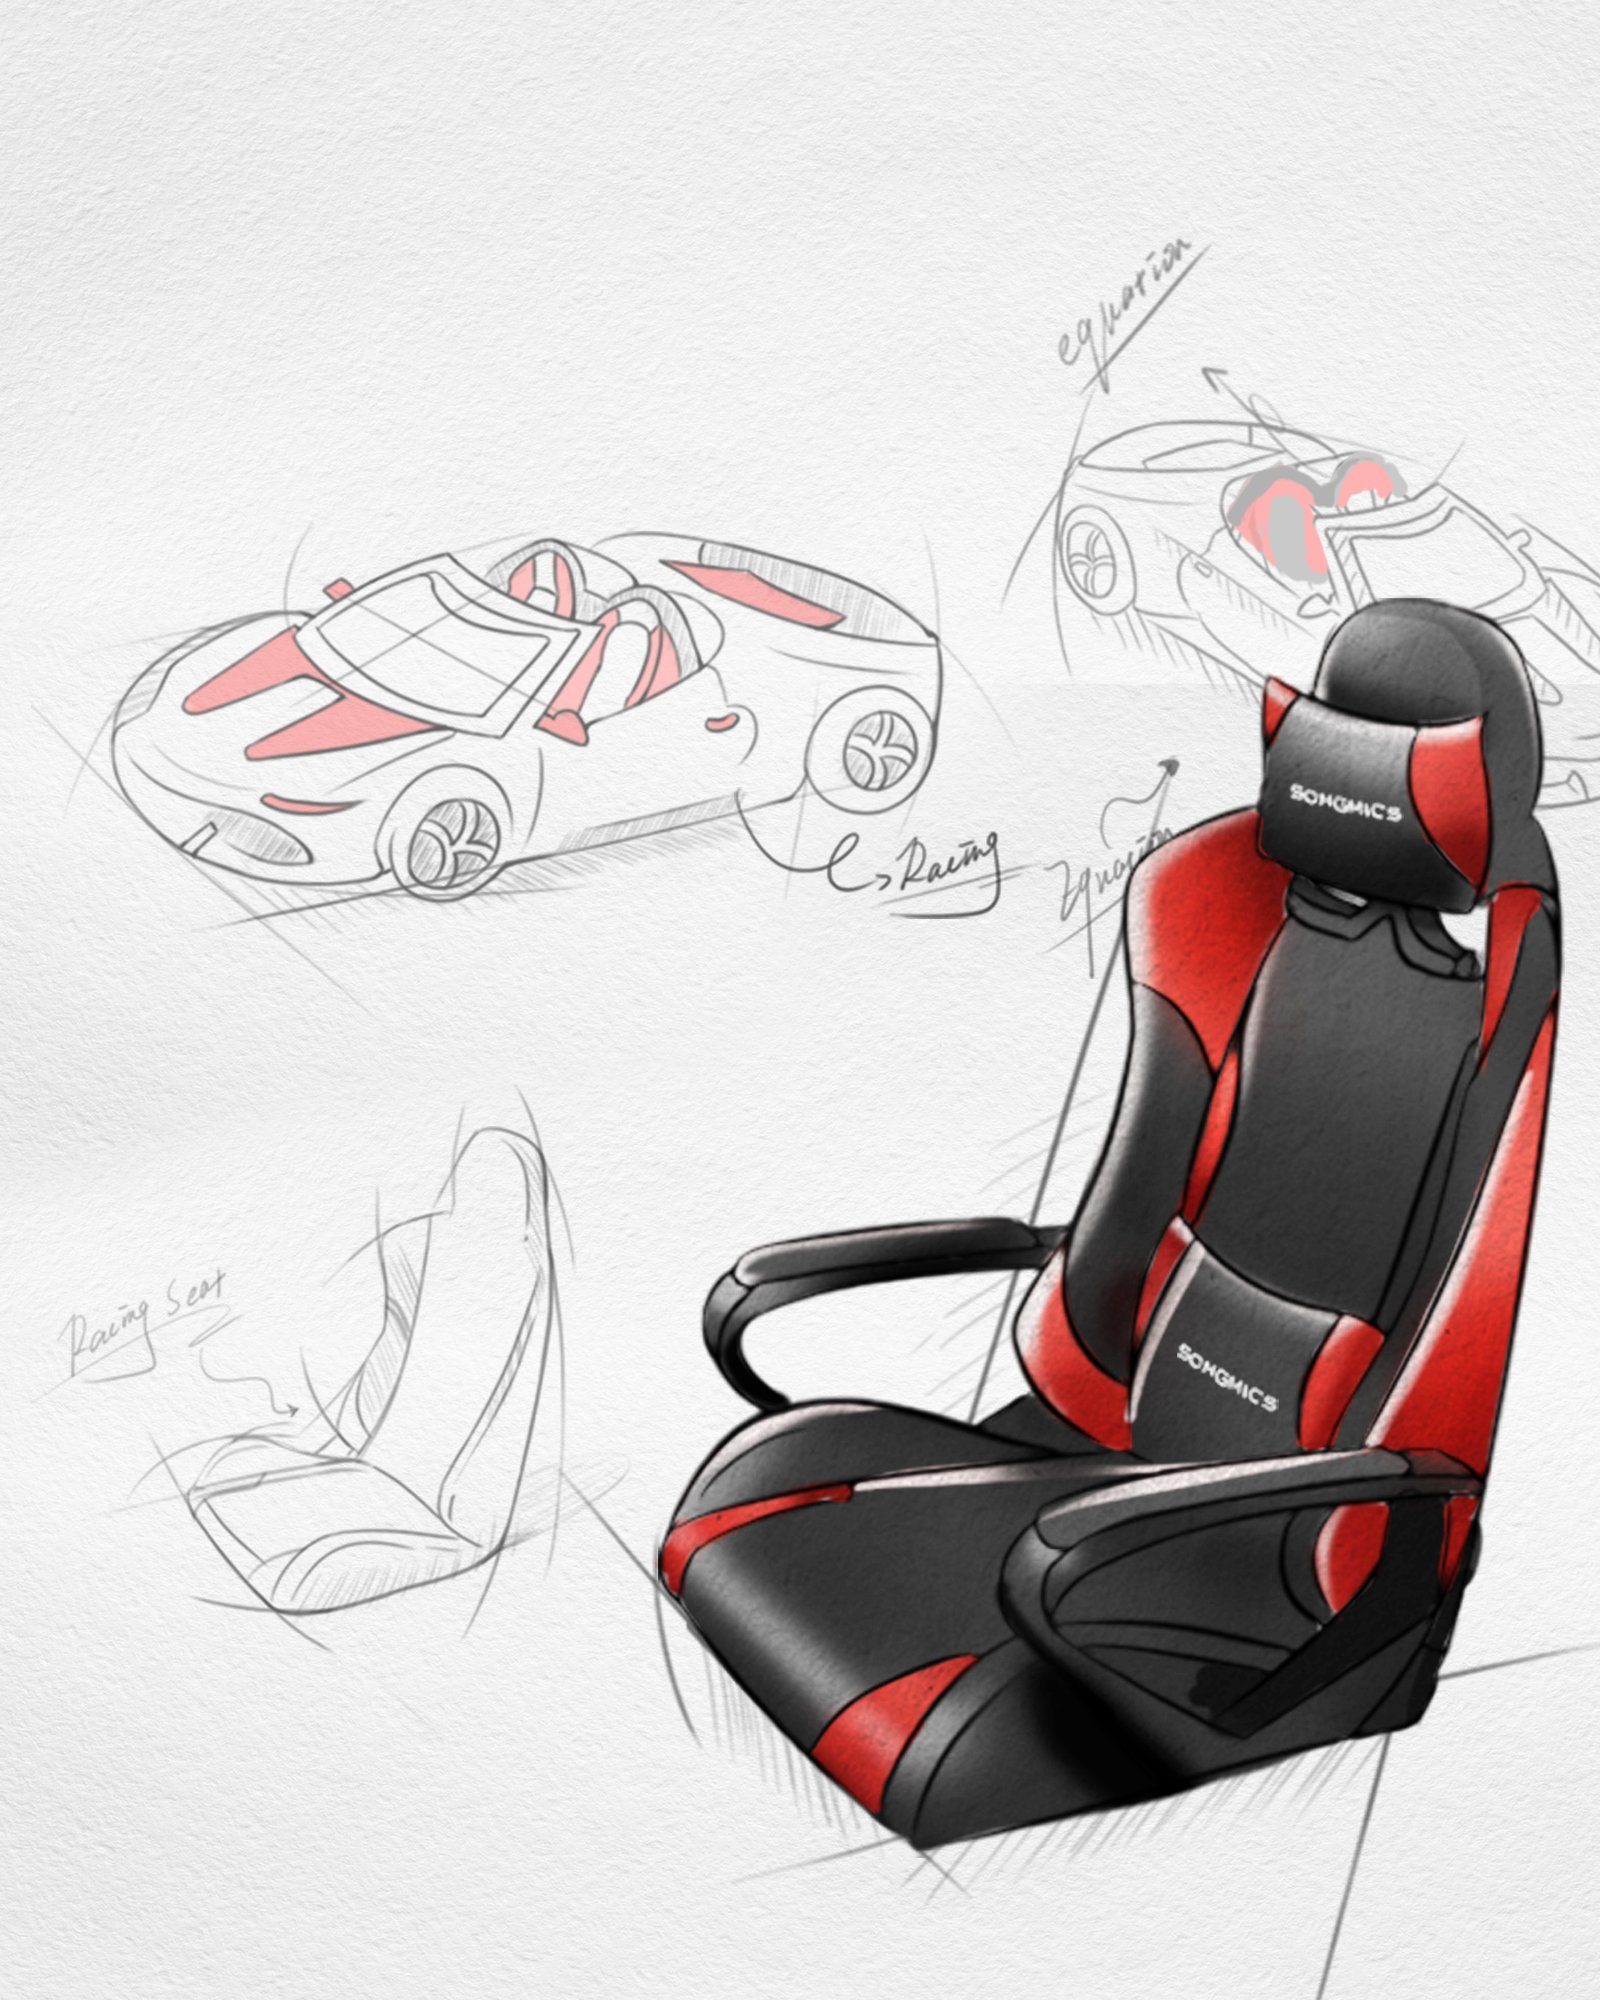 ergonomisch, Gaming Chair, Rot Wippfunktion höhenverstellbar, SONGMICS